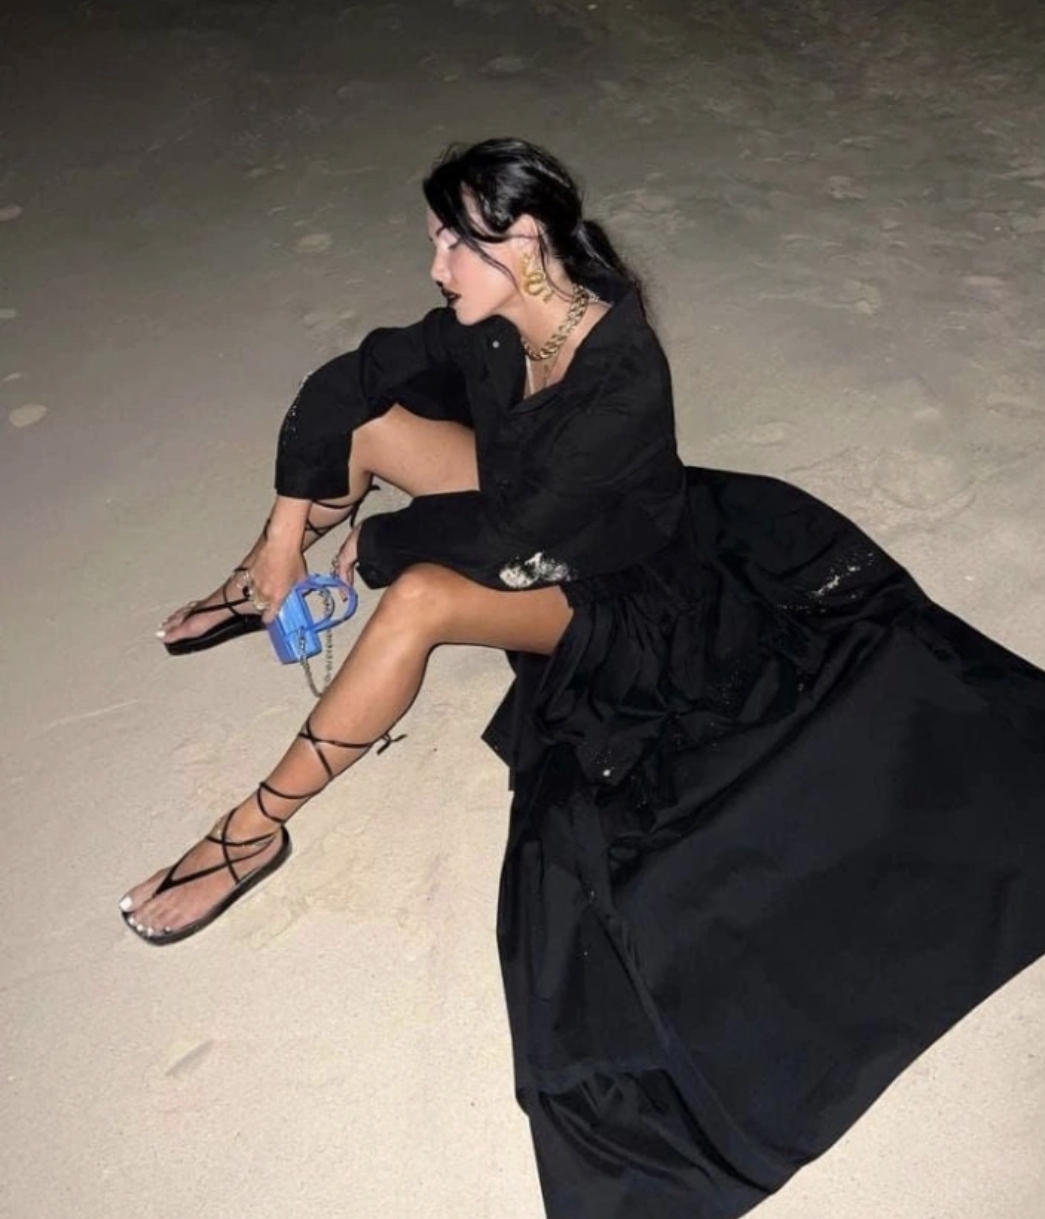 Анастасия Решетова отправилась на пляж ночью в сексуальном наряде